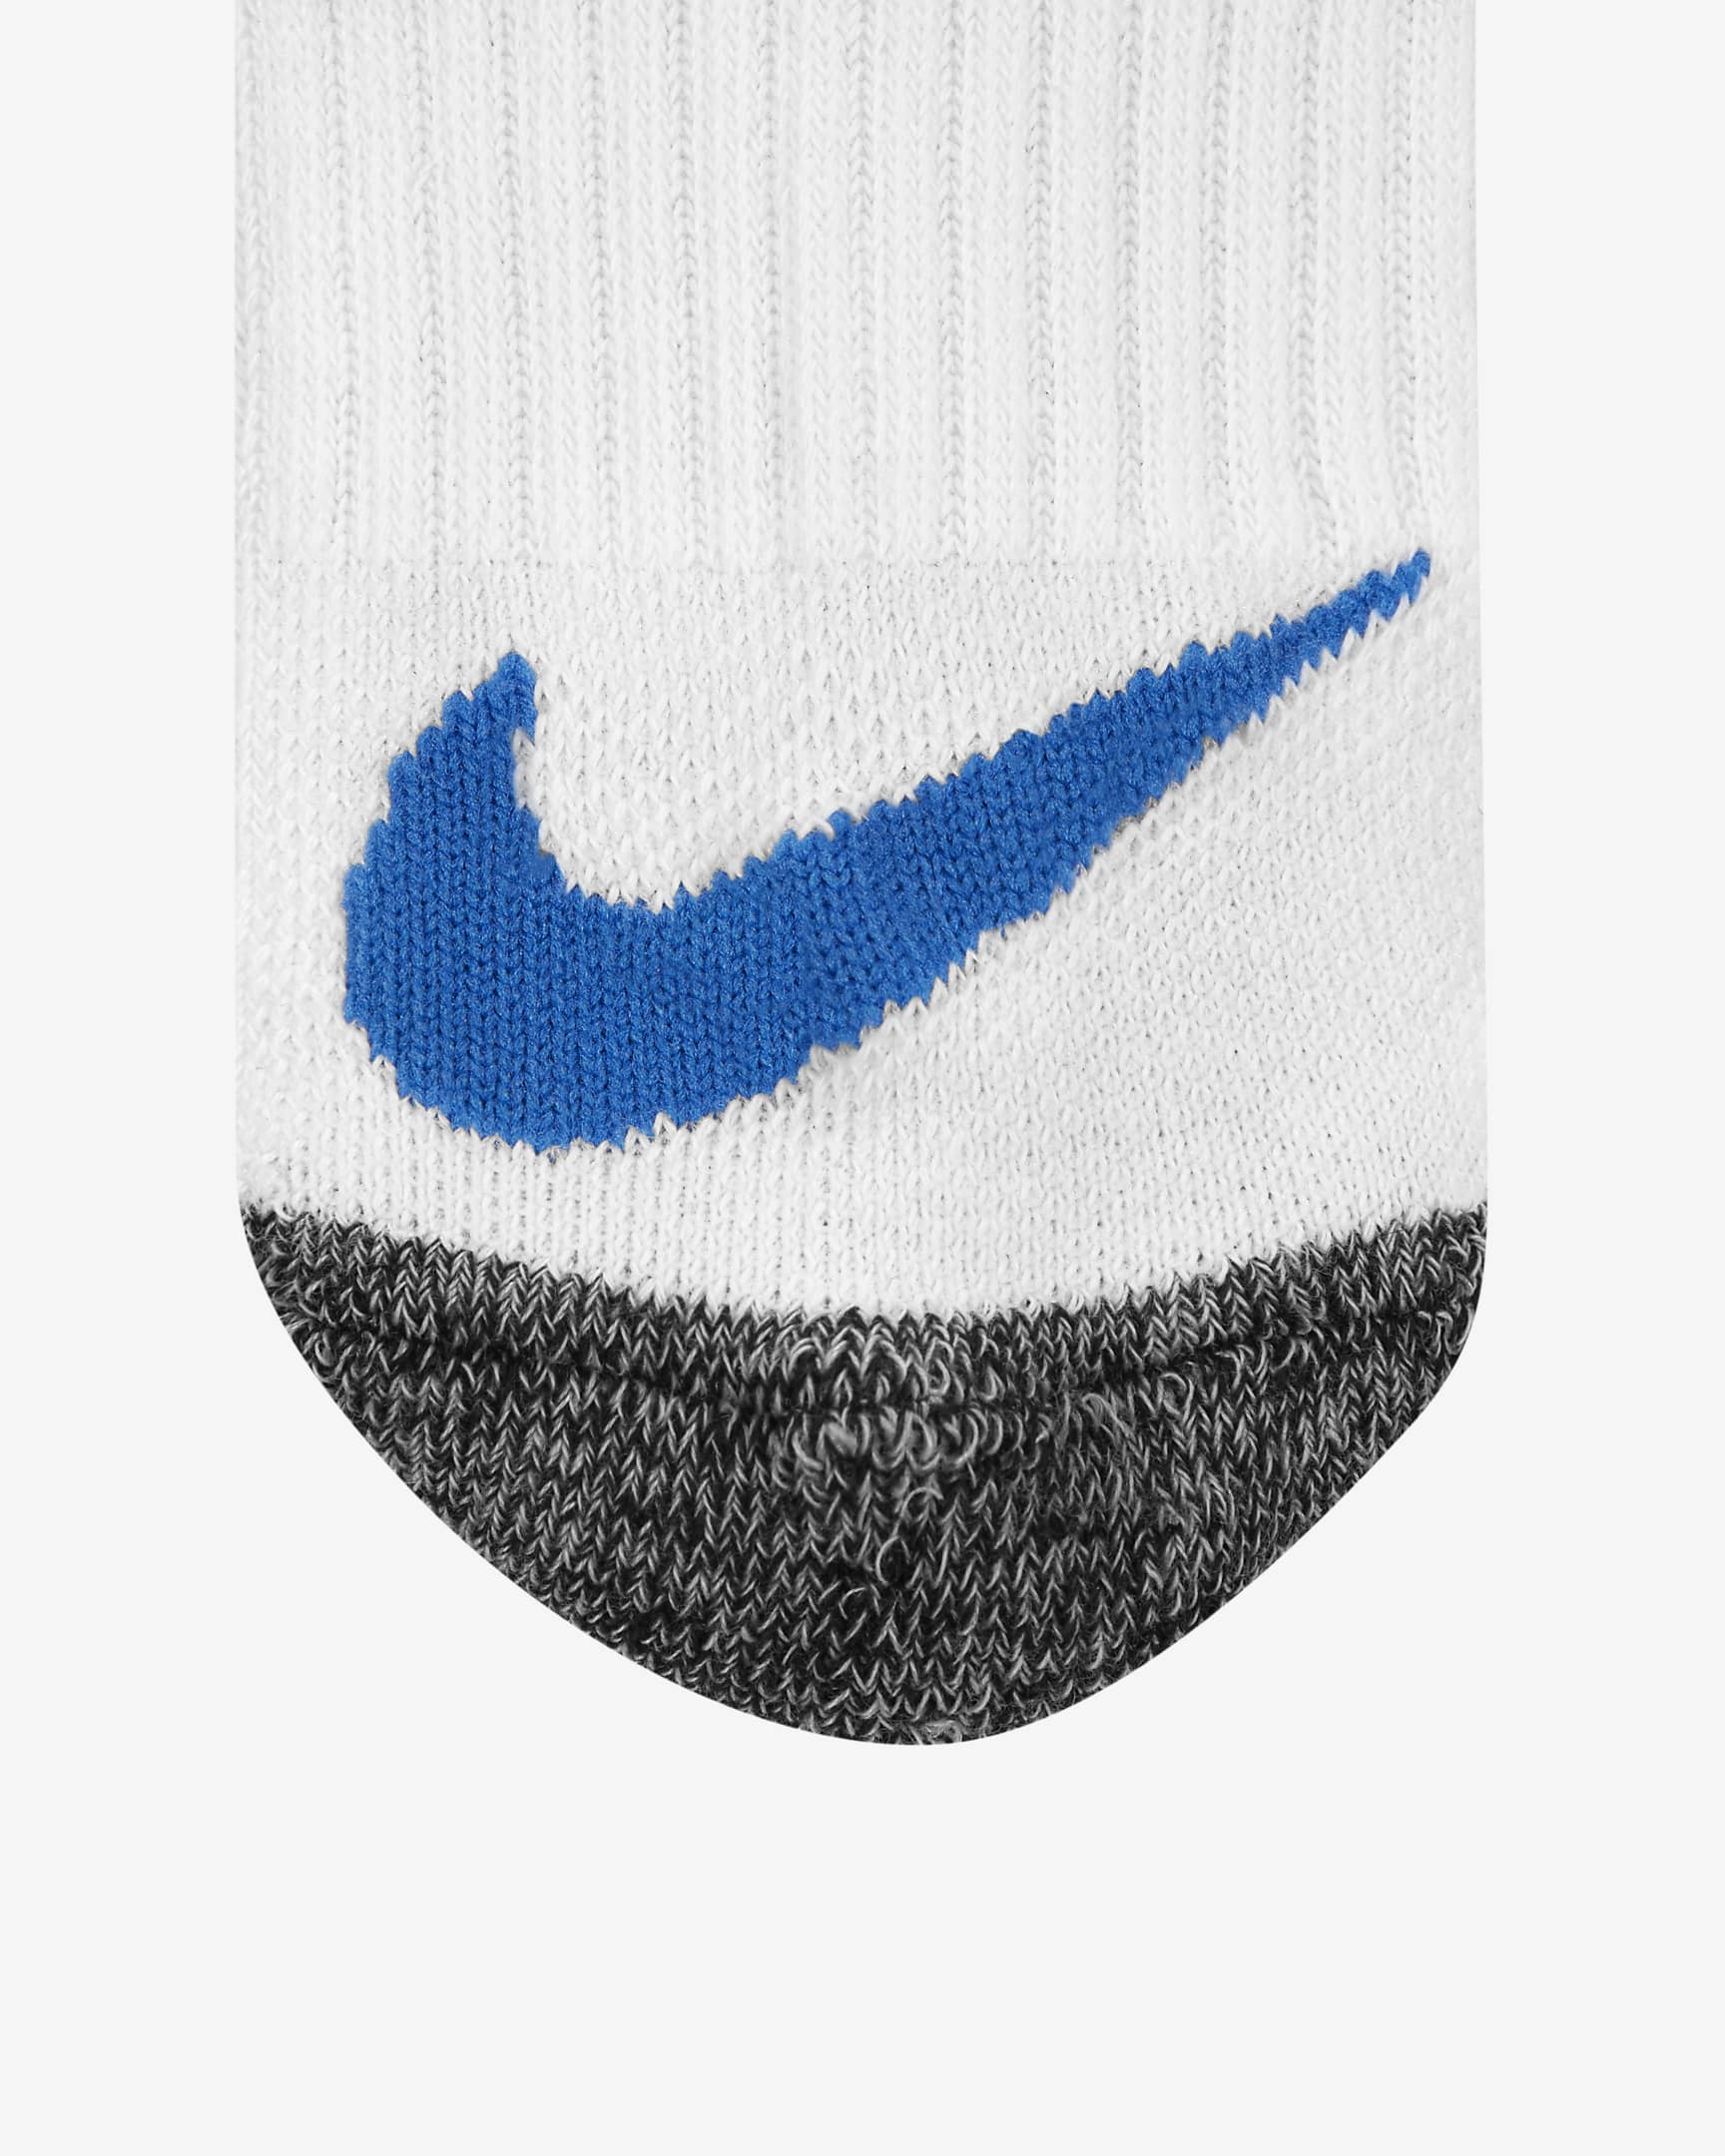 Nike Kids' Cushioned No-Show Socks (6-Pack). Nike.com